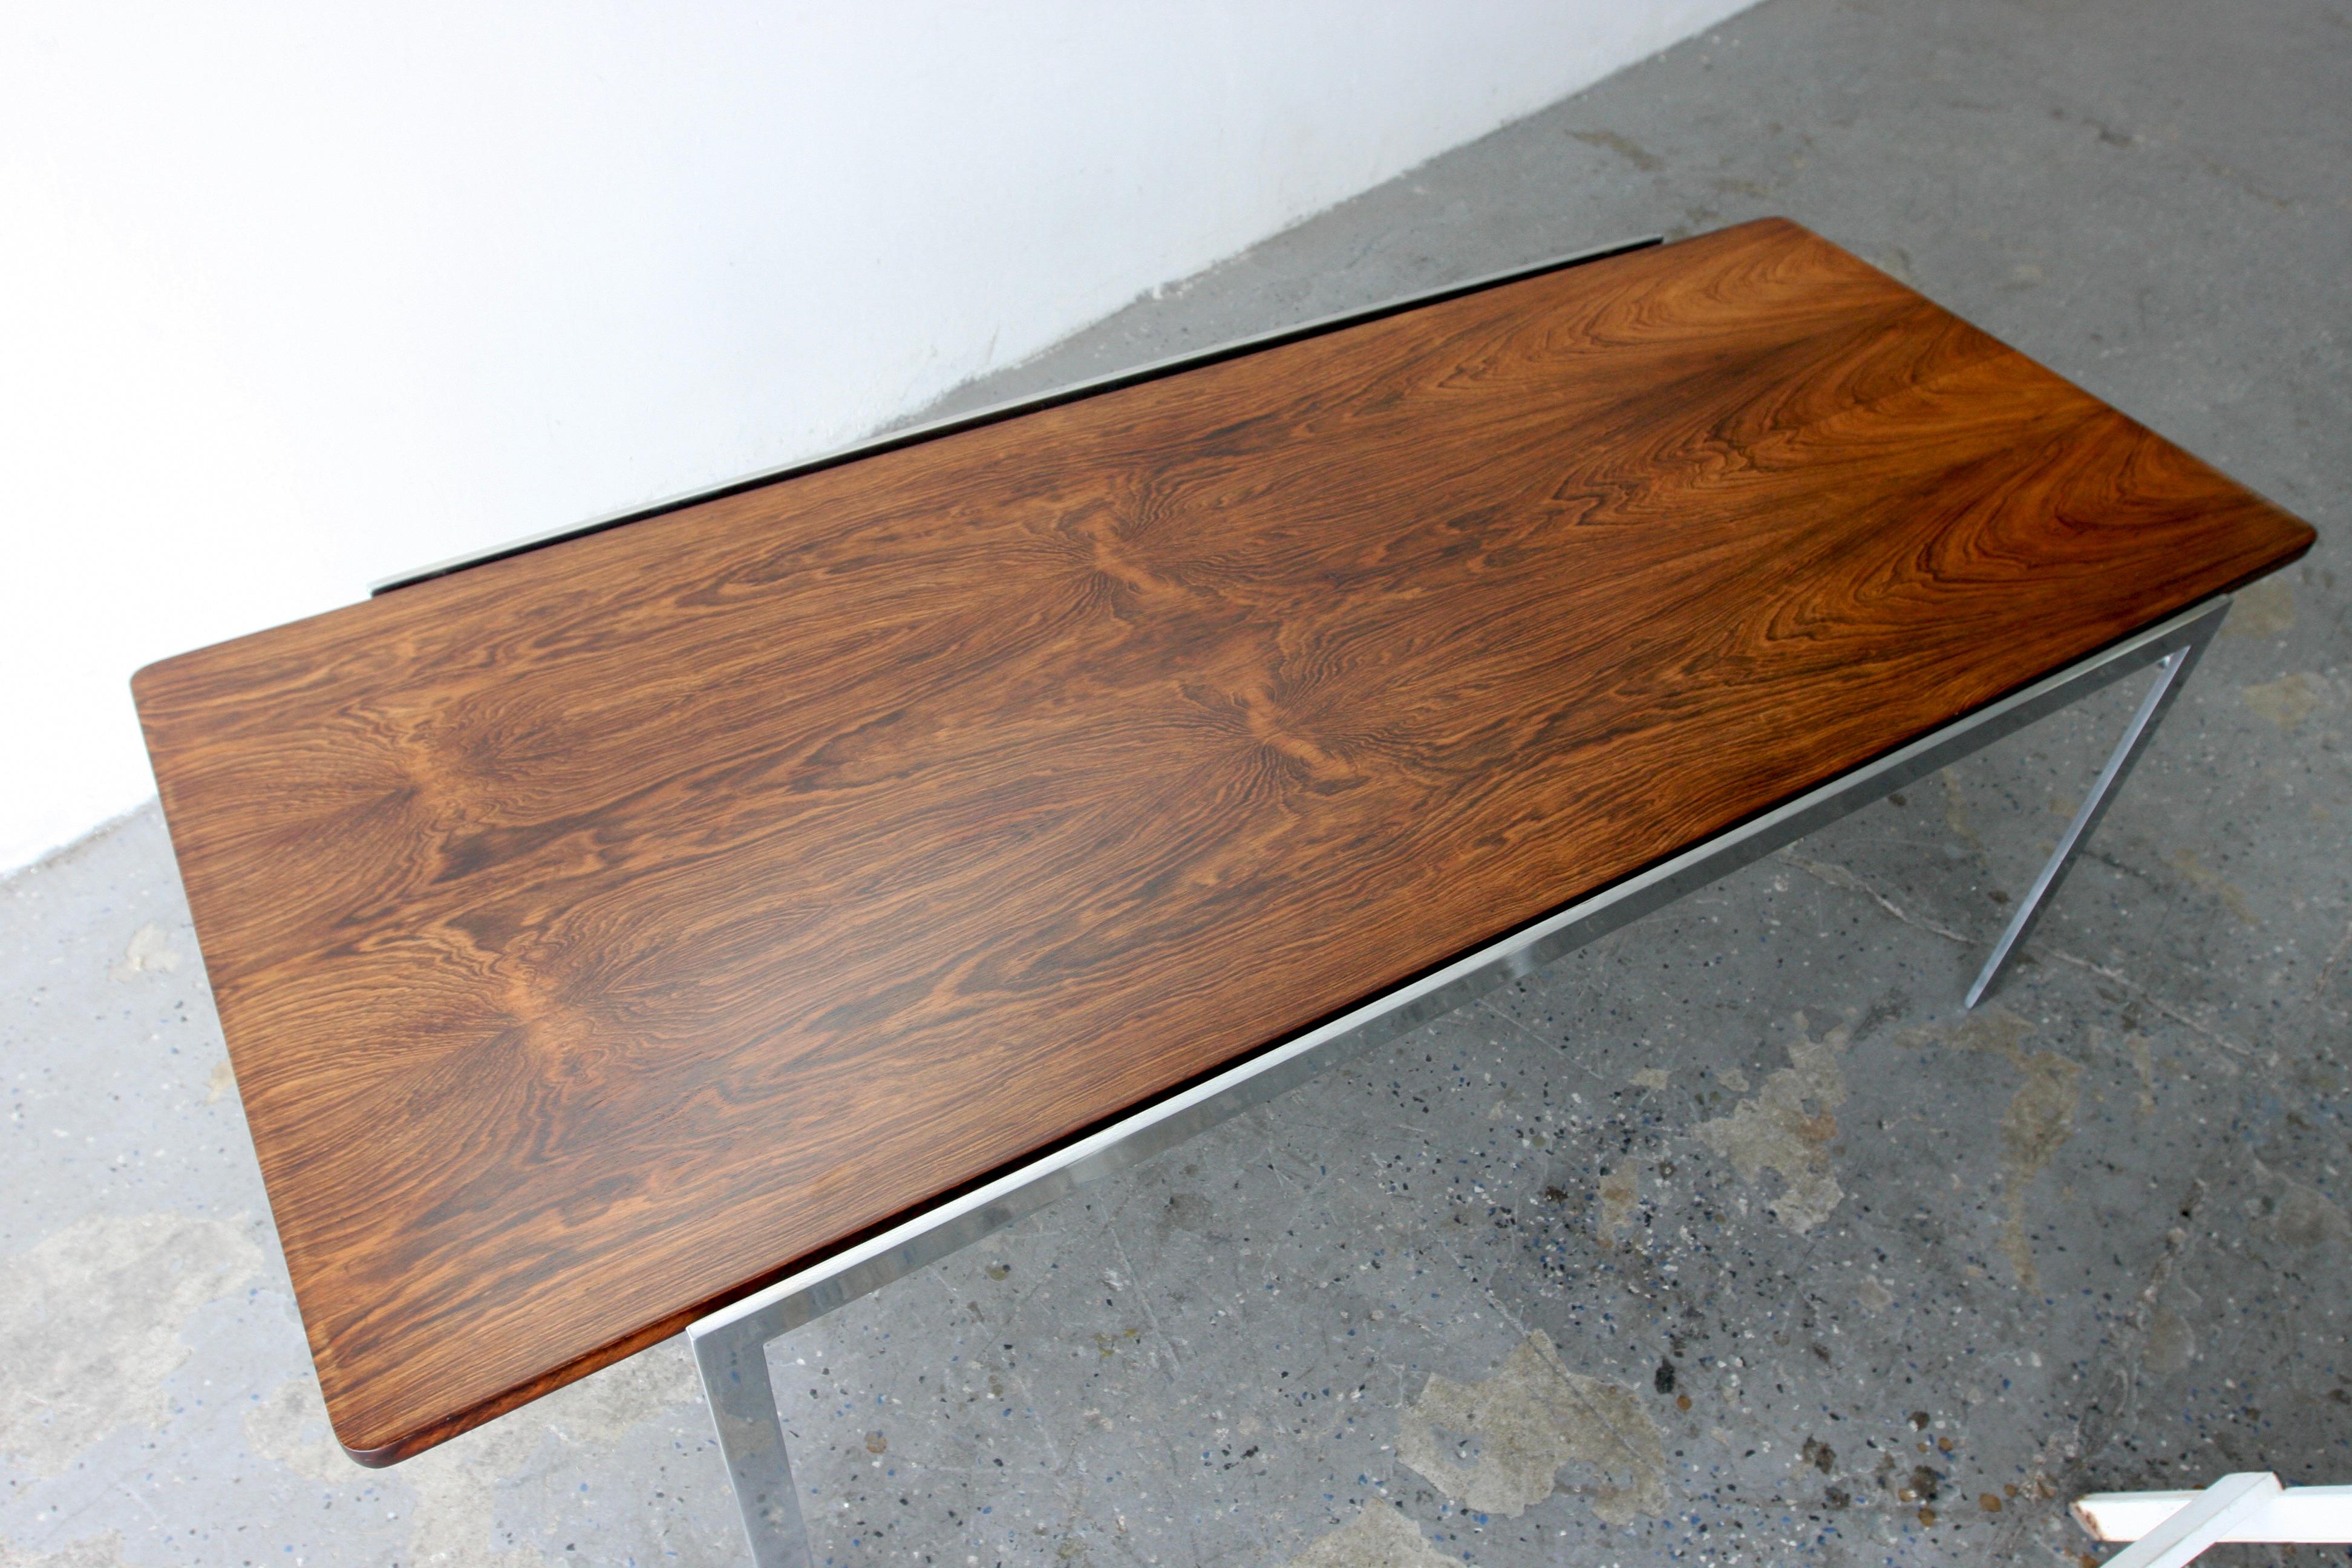 Conçue par Arne Jacobsen, la table basse 3051 n'aurait été produite par Fritz Hansen que pendant 5 à 7 ans, de 1956 à 1963 environ. Exemple fantastique de l'approche minimaliste de Jacobsen, la table basse combine le bois de rose et l'acier poli